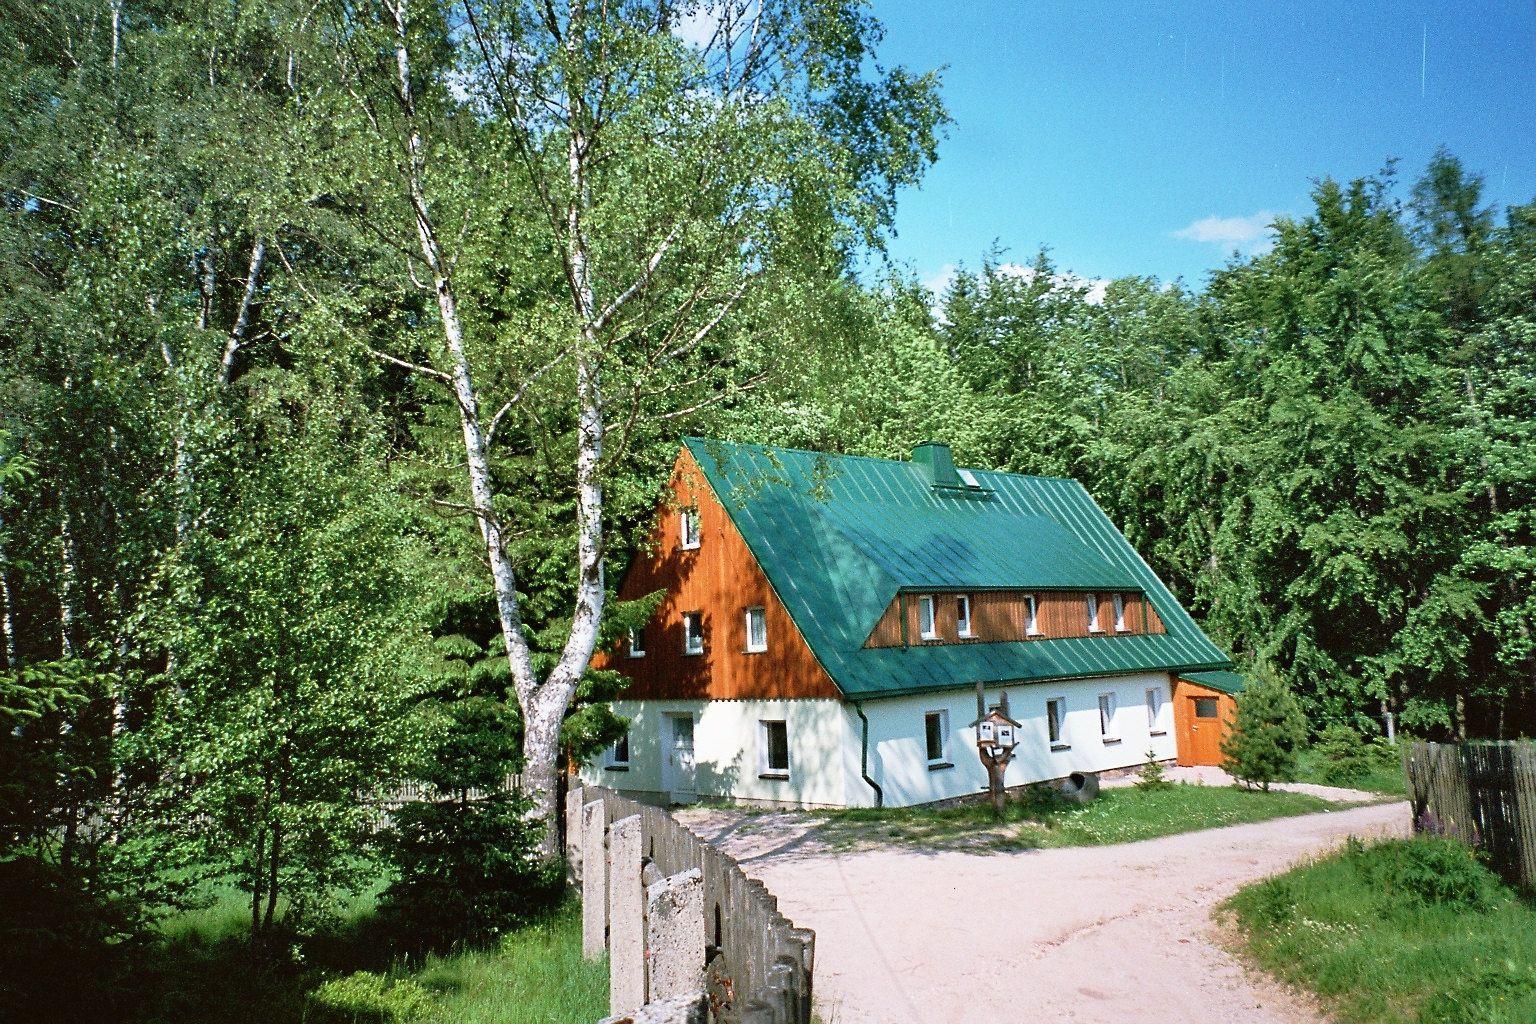 Ferienhaus in Grünheide mit Eigenem Grill   Erzgebirge